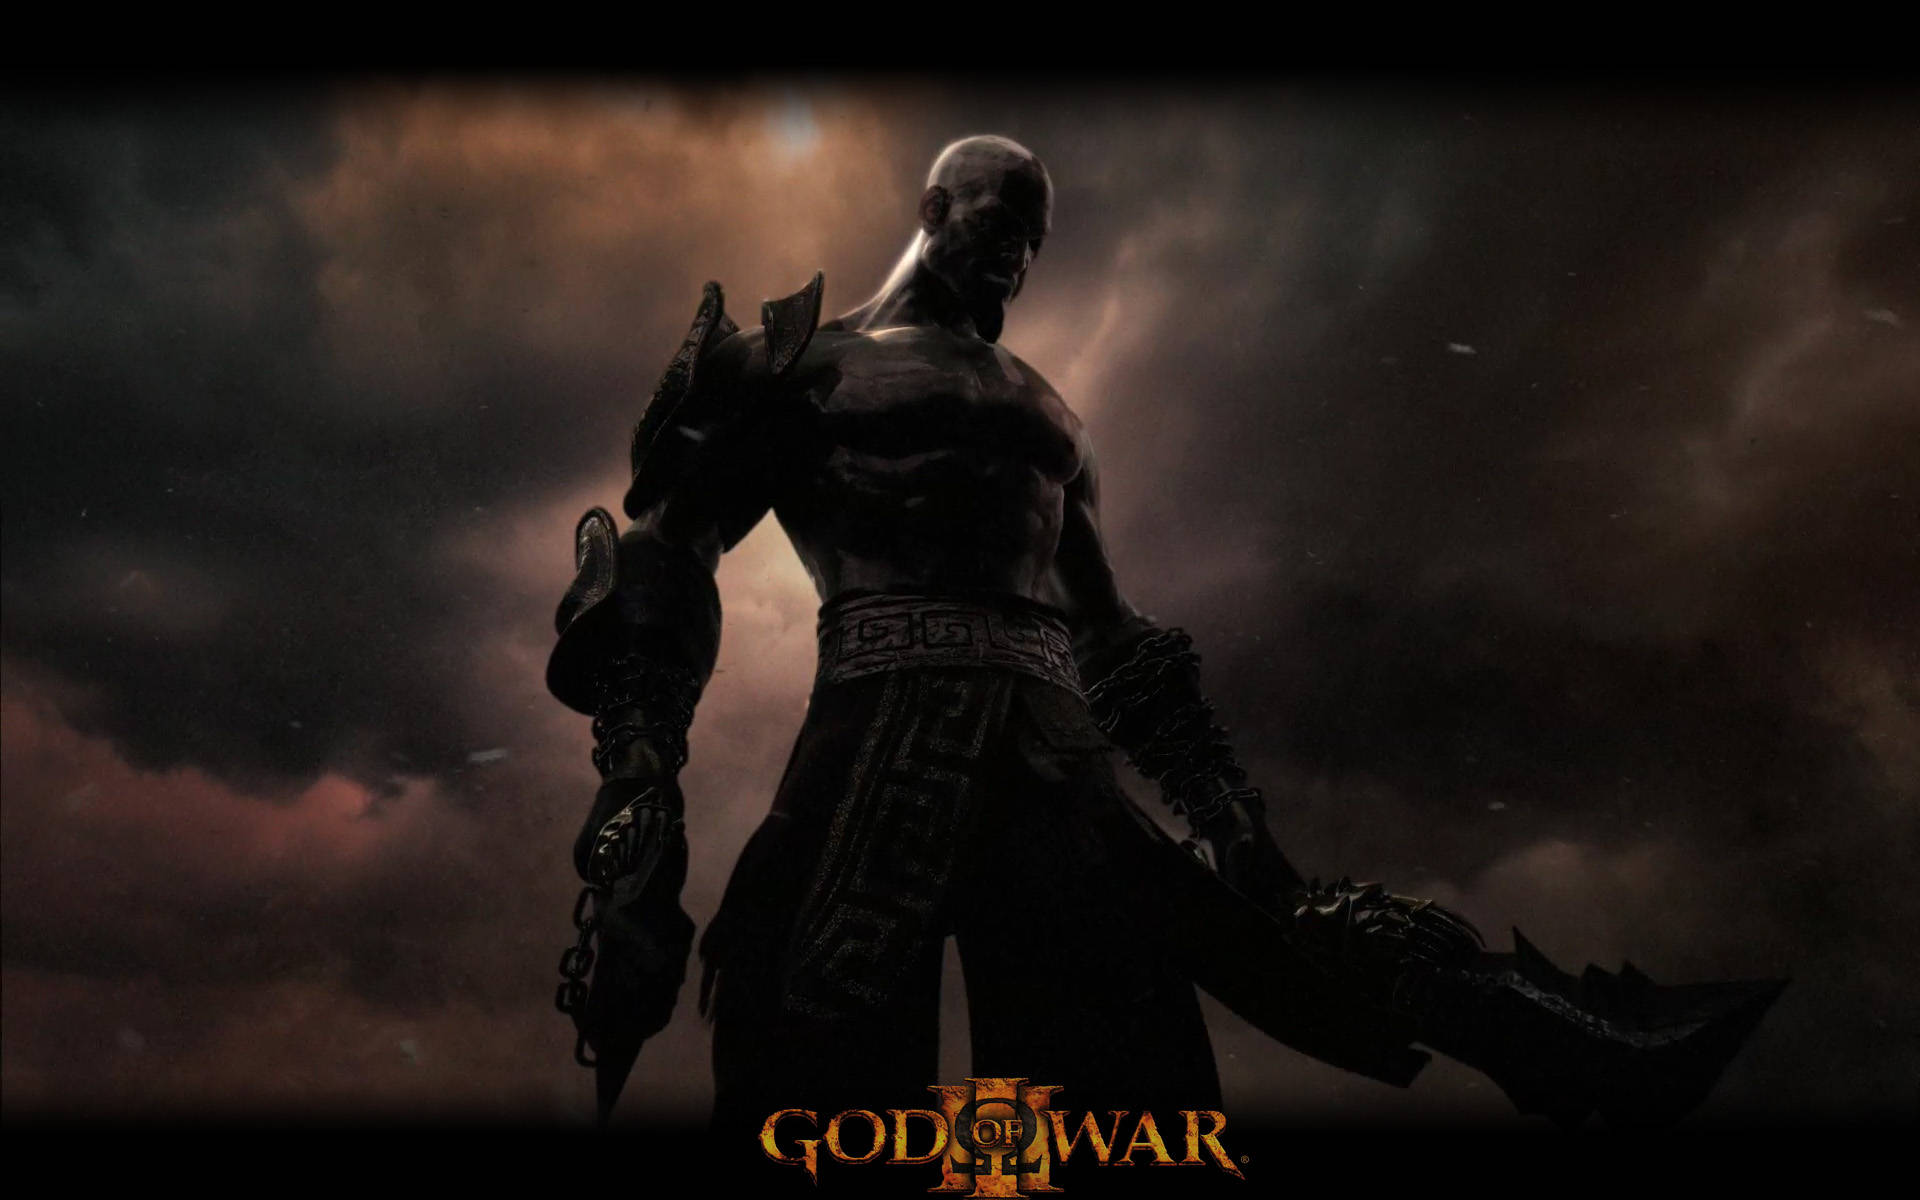 Kratos returns to wreak havoc in the upcoming God of War Wallpaper